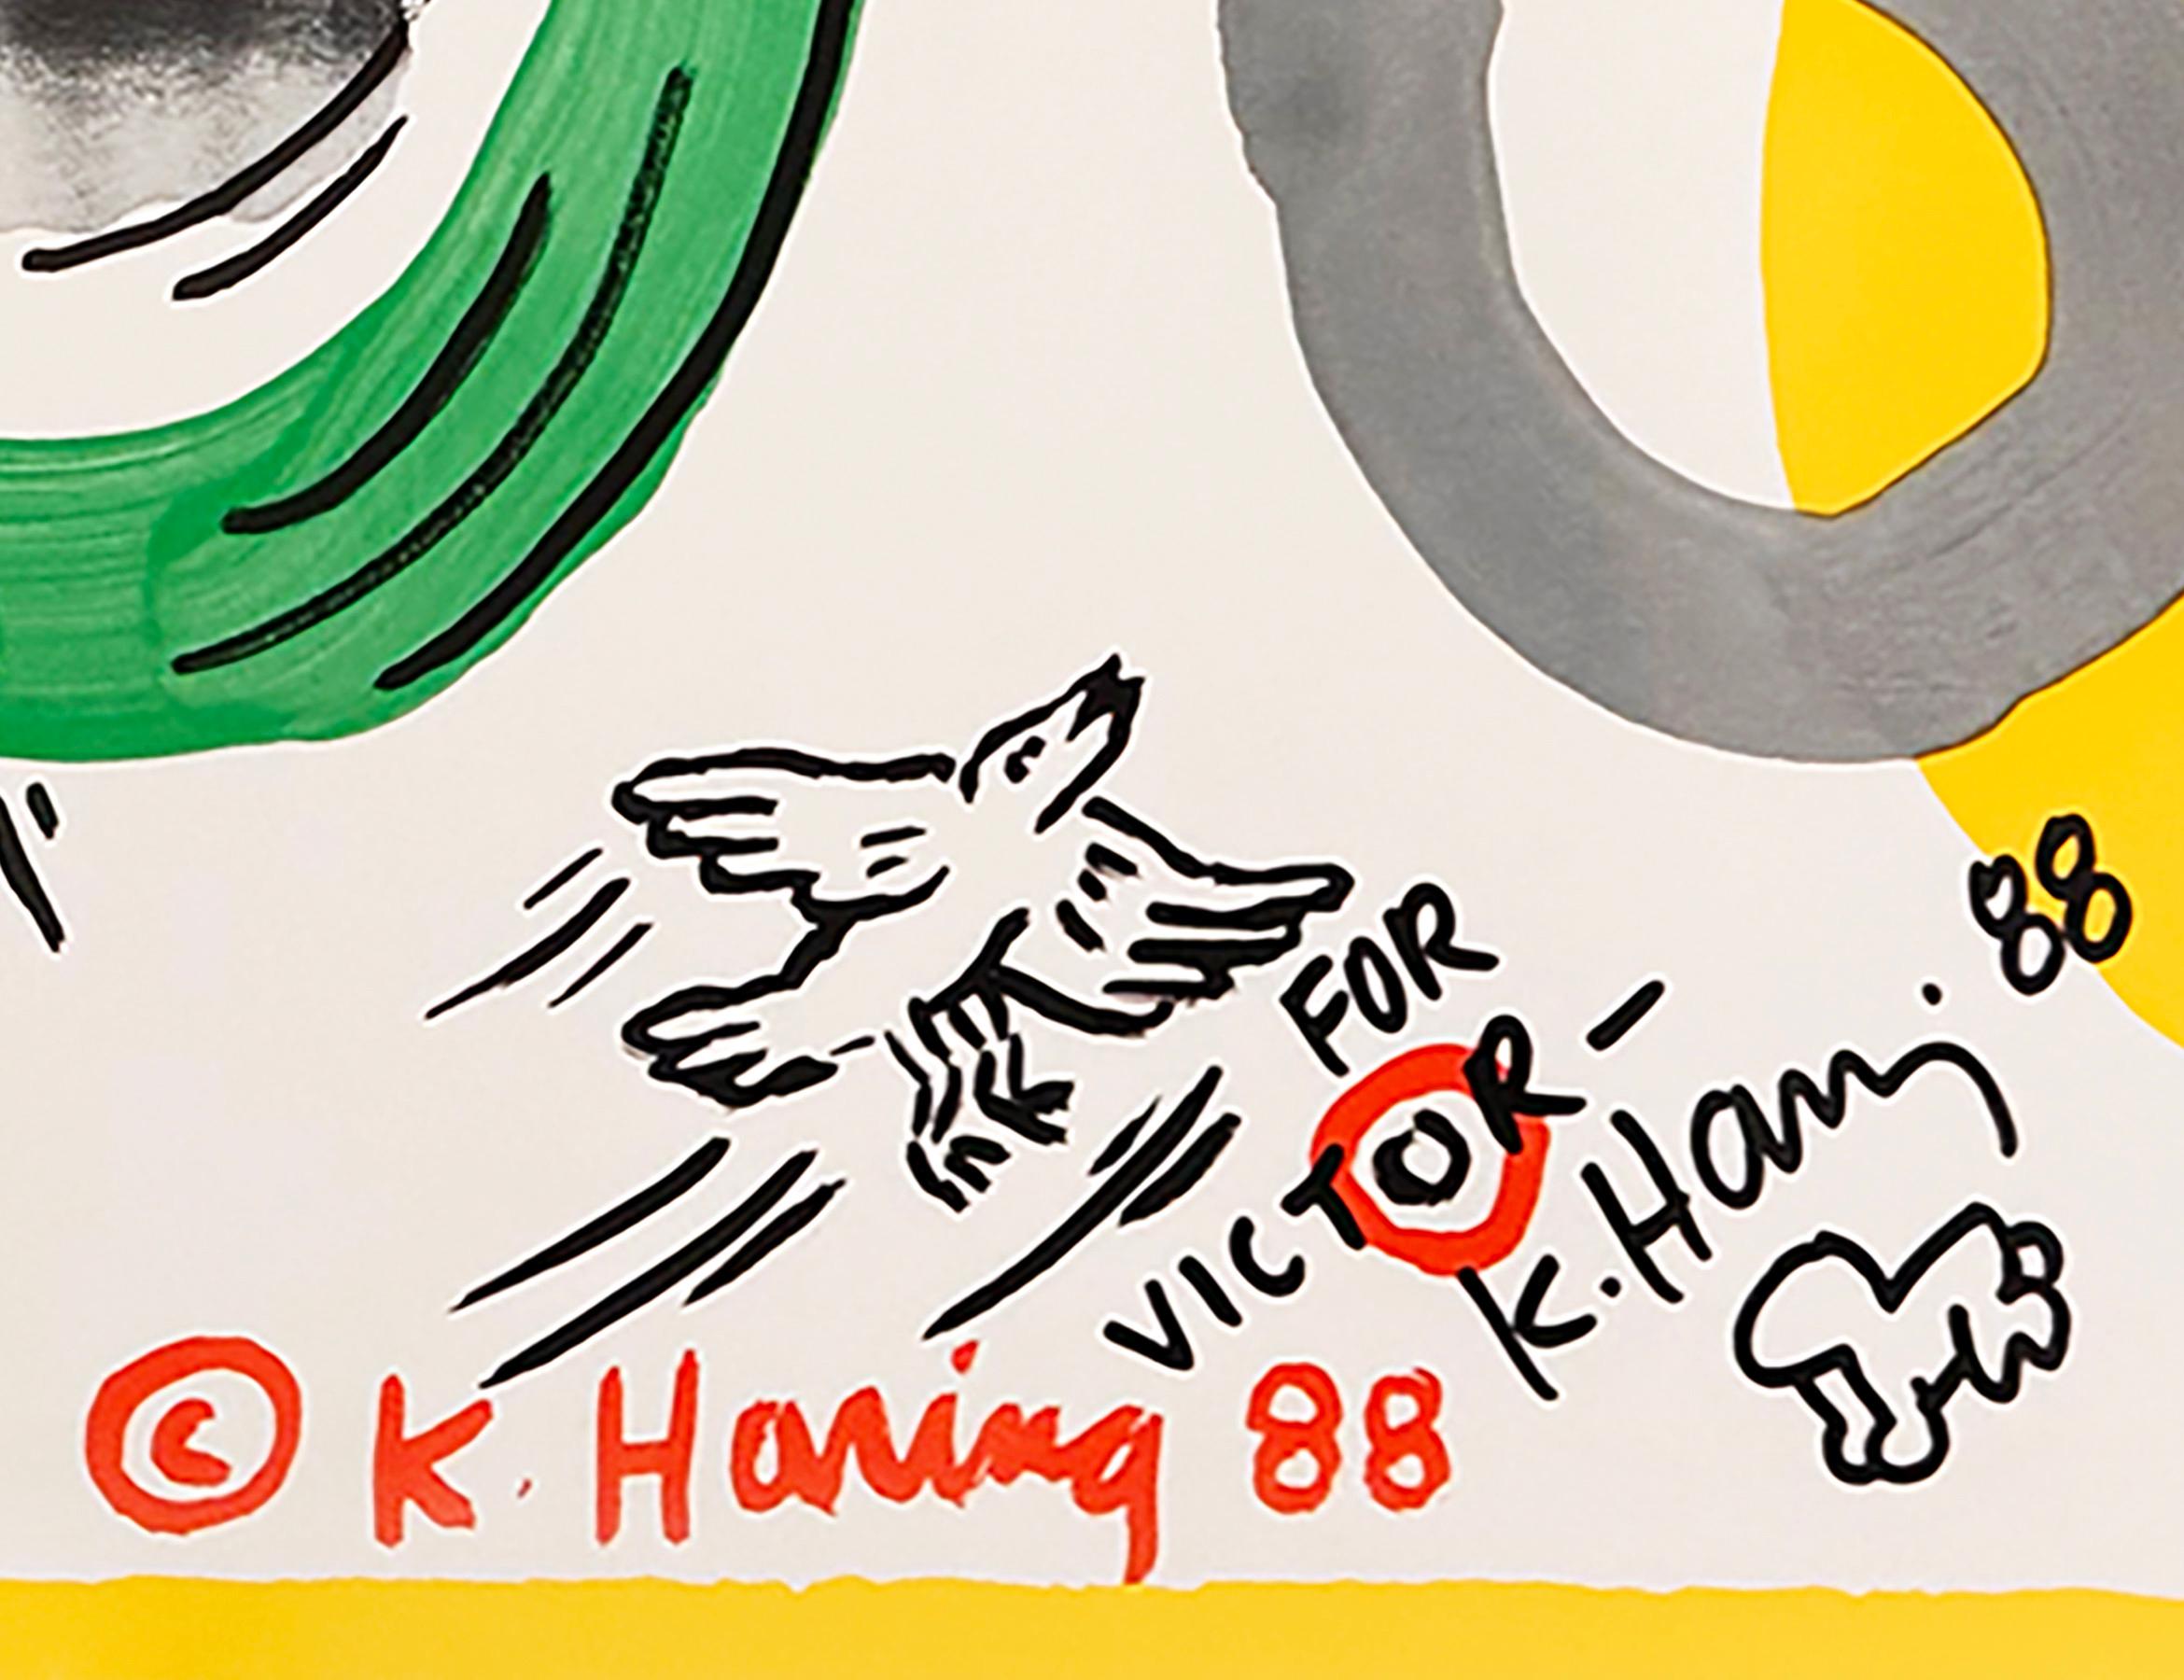 Keith Haring Dessin 1988 sur l'affiche d'exposition de la Tony Shafrazi Gallery :

Rare affiche d'exposition de Keith Haring datant des années 1980 et représentant un bébé rampant dessiné à la main. Publié à l'occasion de l'exposition de Keith